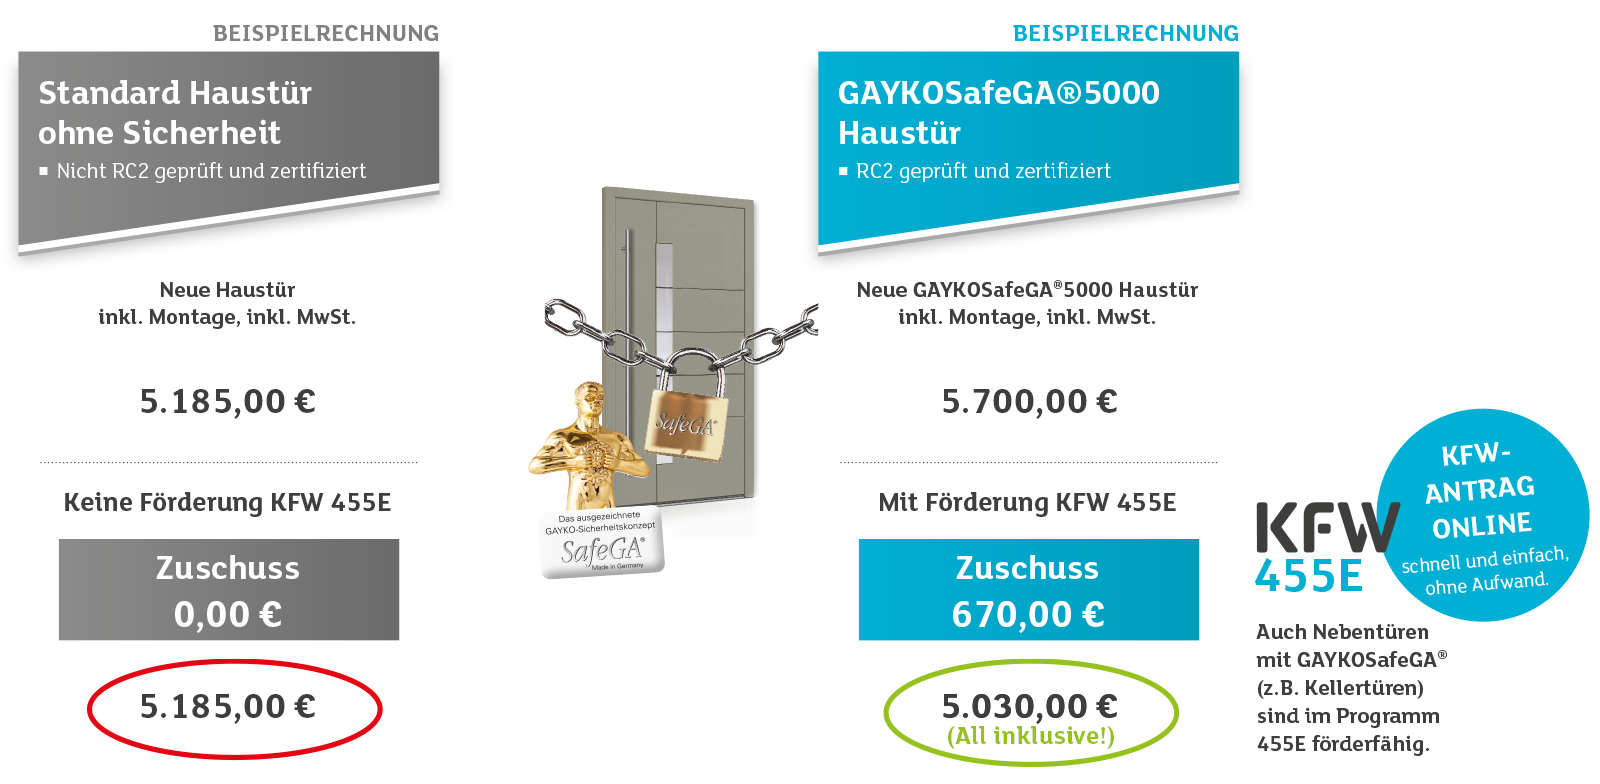 Mehr sparen mit einer GAYKOSafeGA®5000 Haustür im Vergleich zu einer Standard-Haustür!